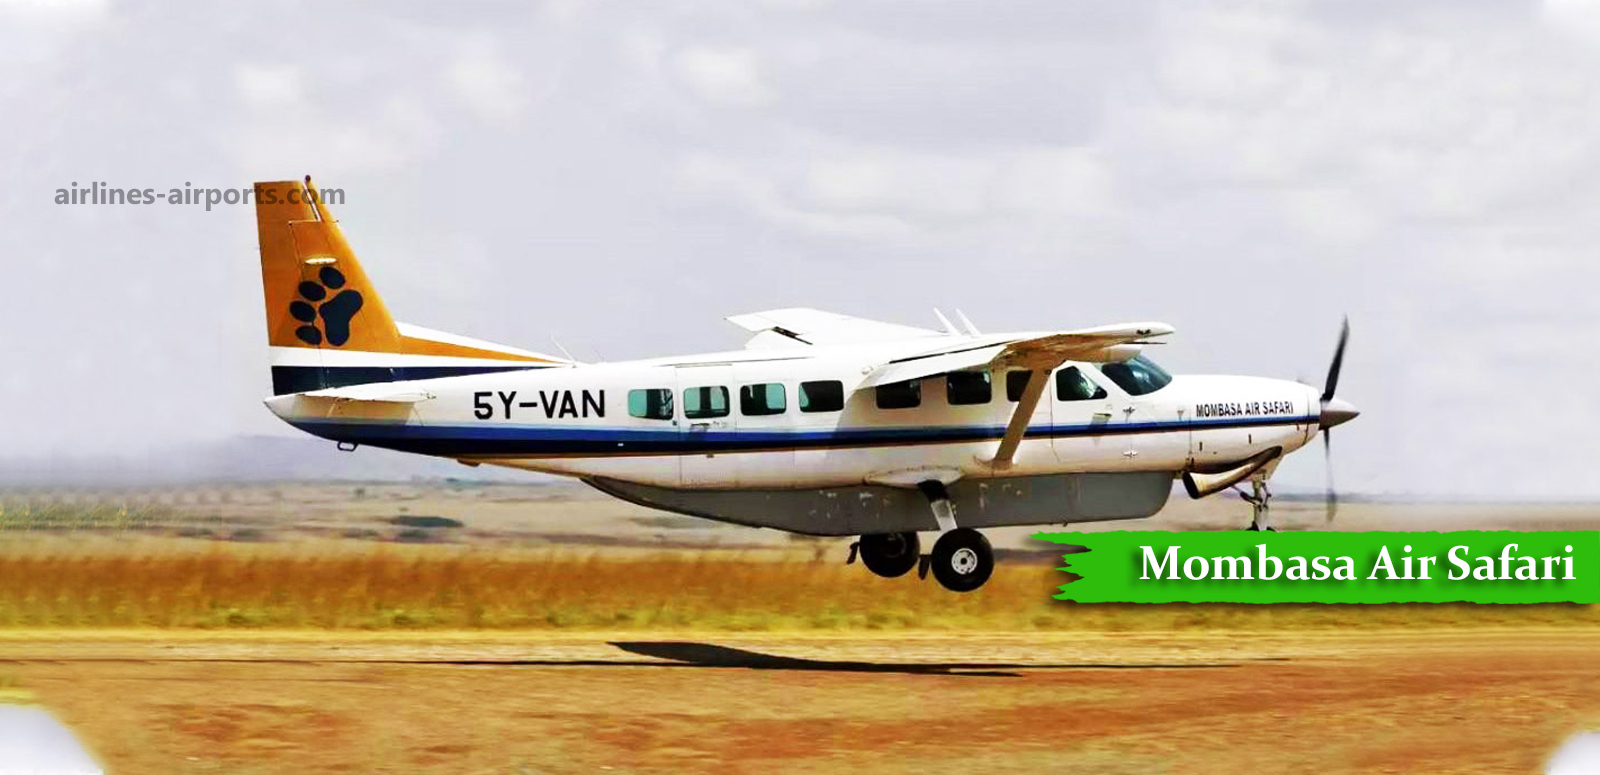 mombasa air safari check in